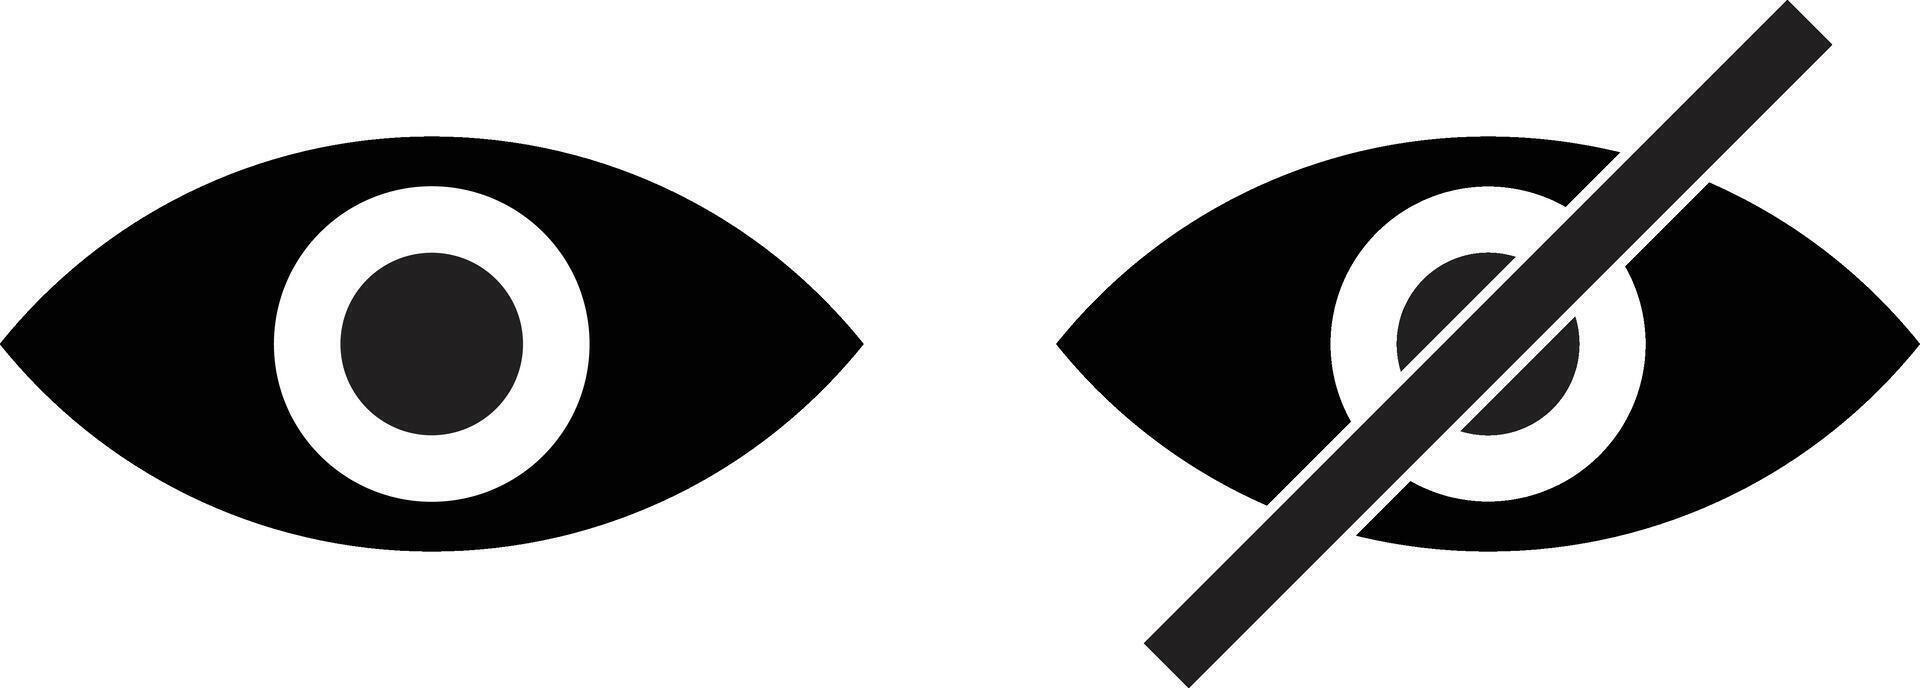 oog en Nee oog pictogrammen . zien en niet zien oog icoon . tonen en verbergen icoon . illustratie vector